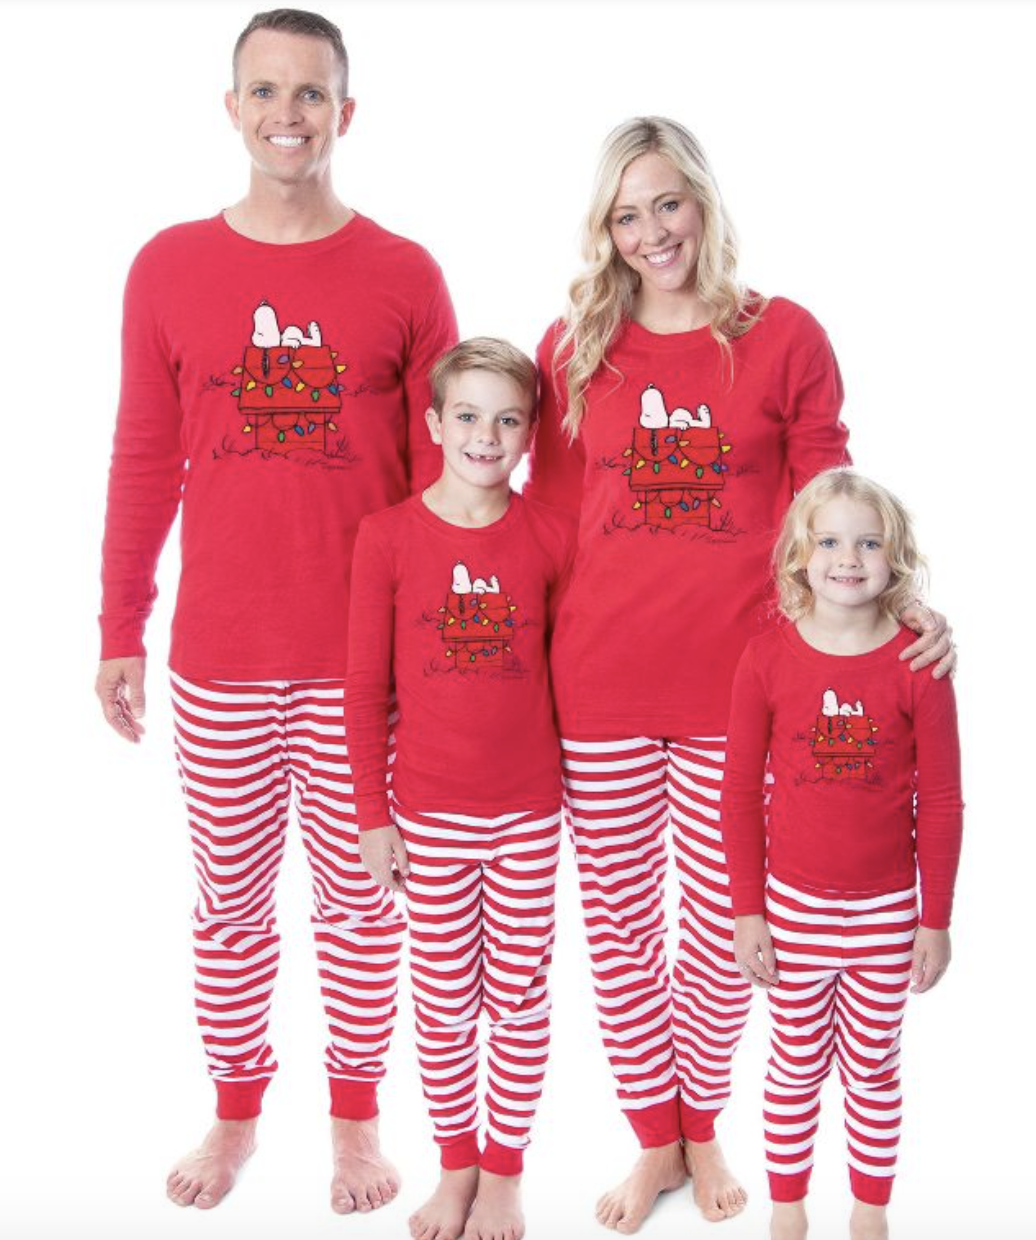 Kleding Gender-neutrale kleding volwassenen Pyjamas & Badjassen Pyjama Christmas Pajamas Family Matching Family Pajamas Matching Family Christmas Pajamas Holiday Pajamas For Family Matching Christmas Pajamas 